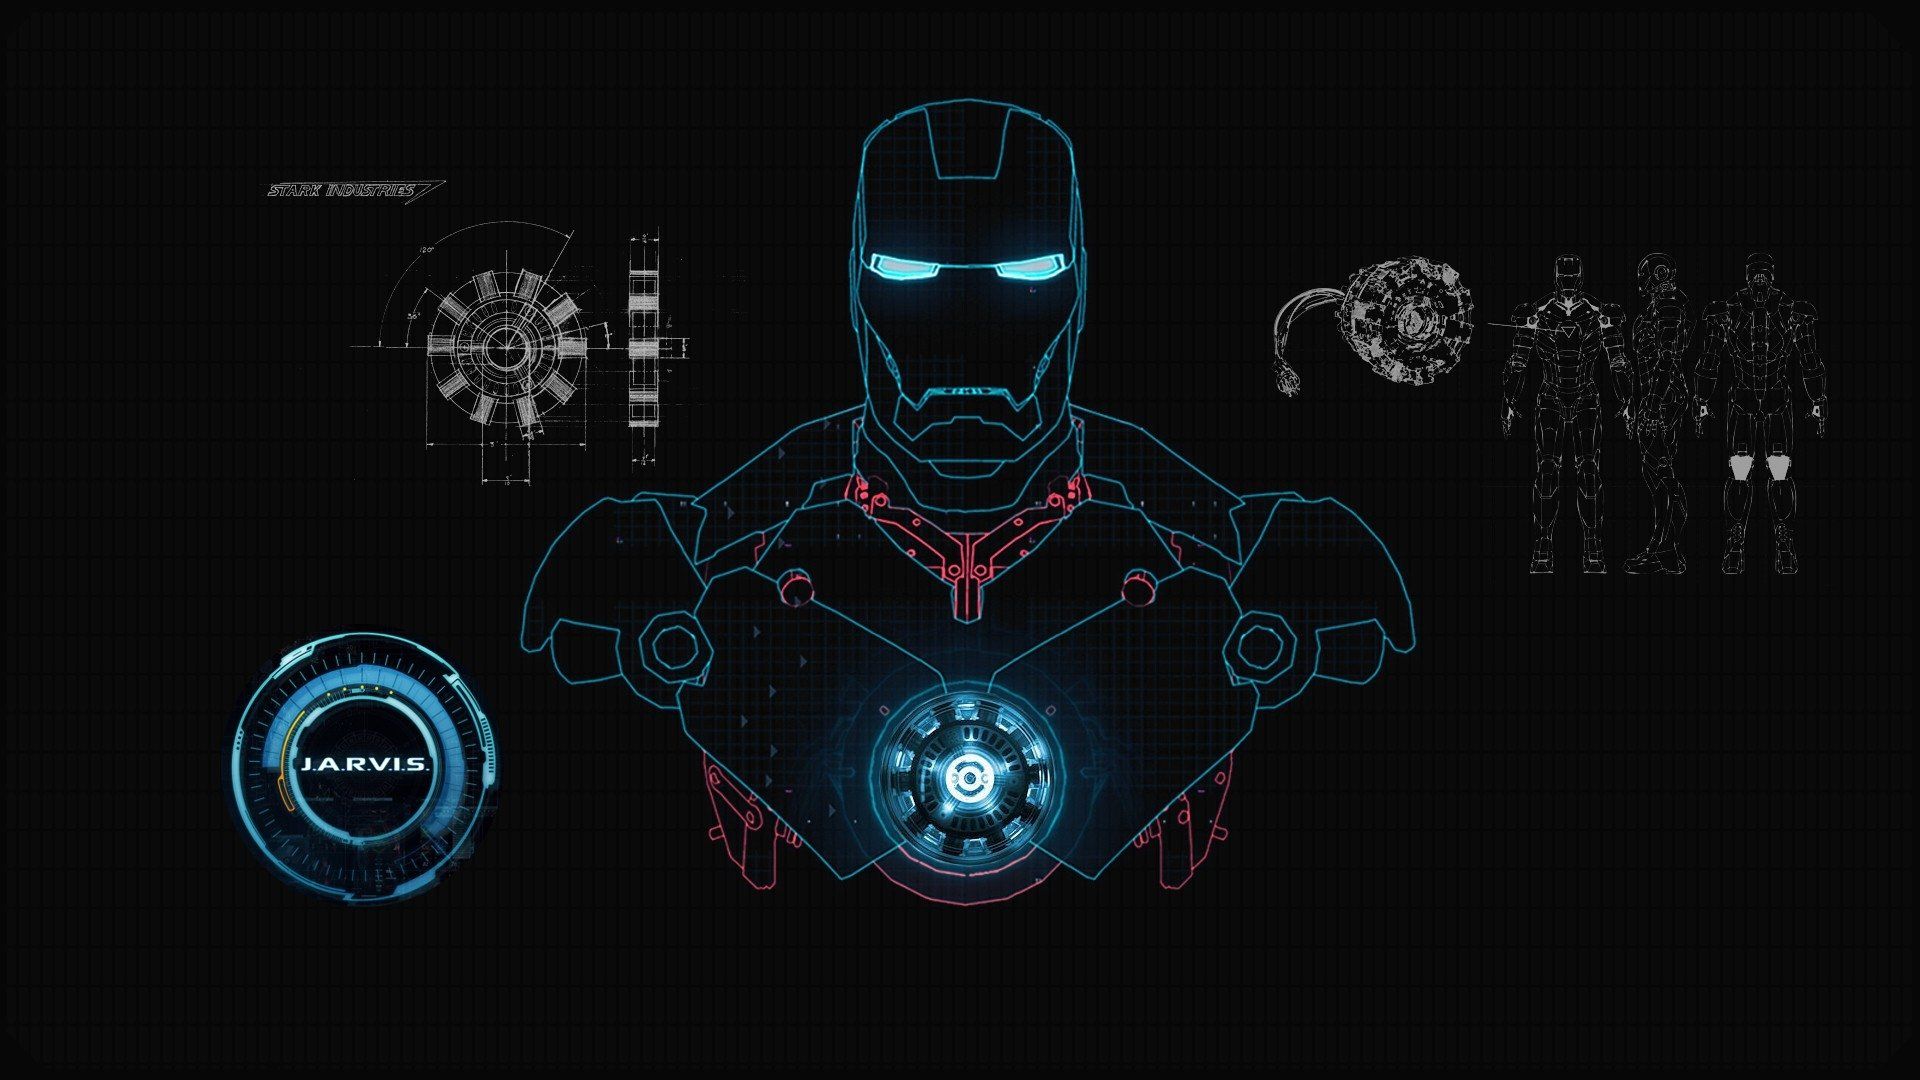 Iron Man images.jpg